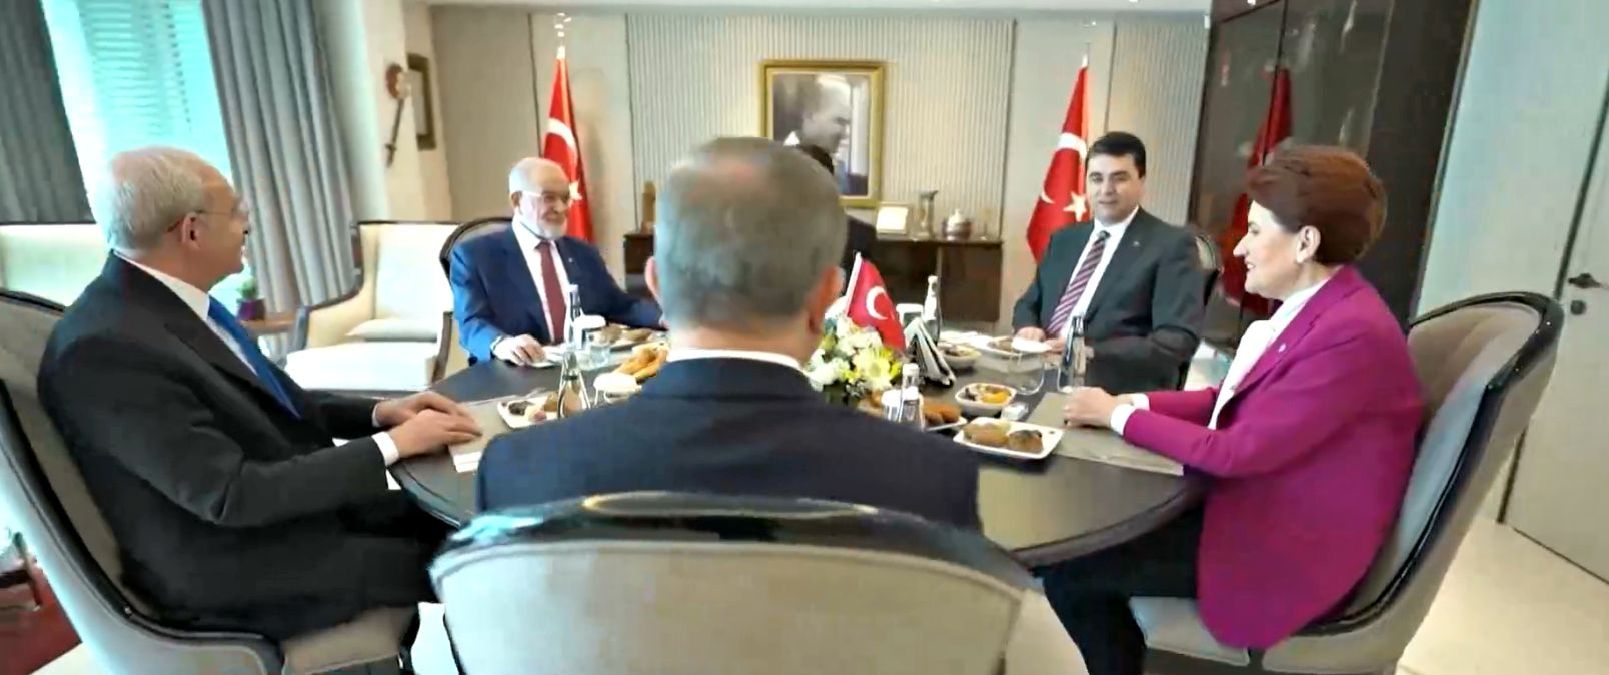 Πολιτικές εξελίξεις στην Τουρκία - Συνεδριάζουν οι «πέντε» της αντιπολίτευσης μετά την αποχώρηση Ακσενέρ